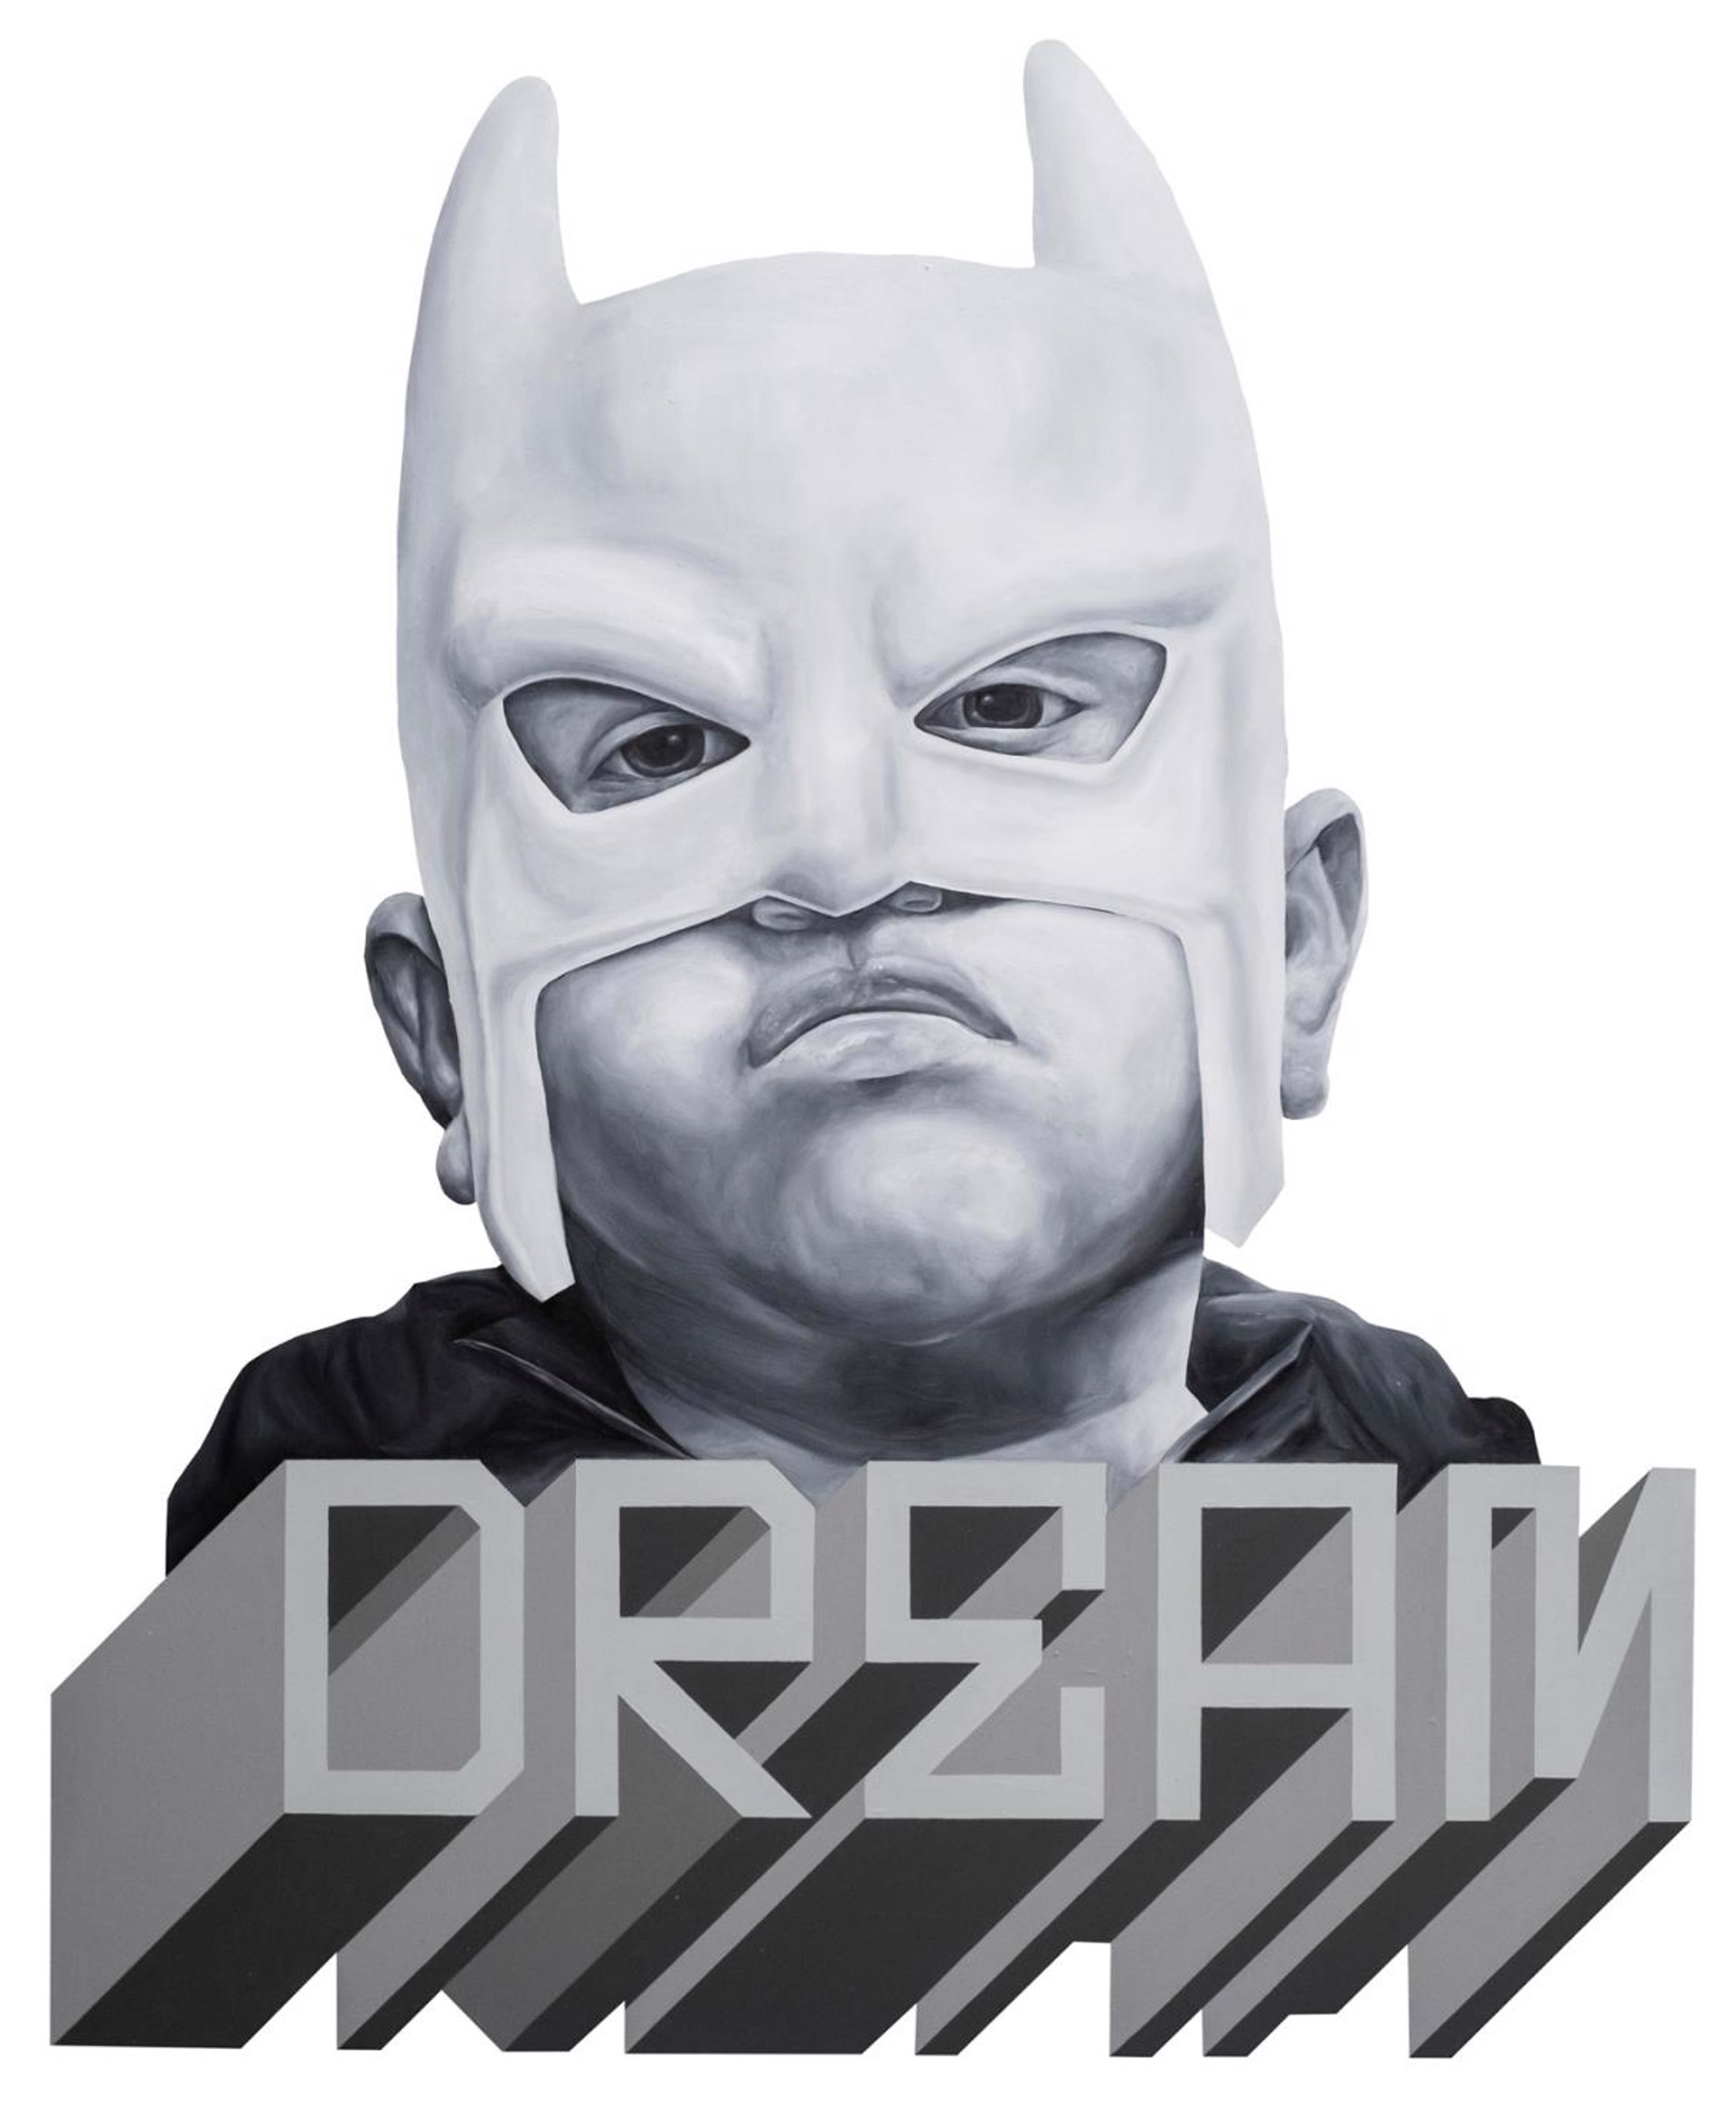 DREAM (Bat Boy) by Carlos Donjuan